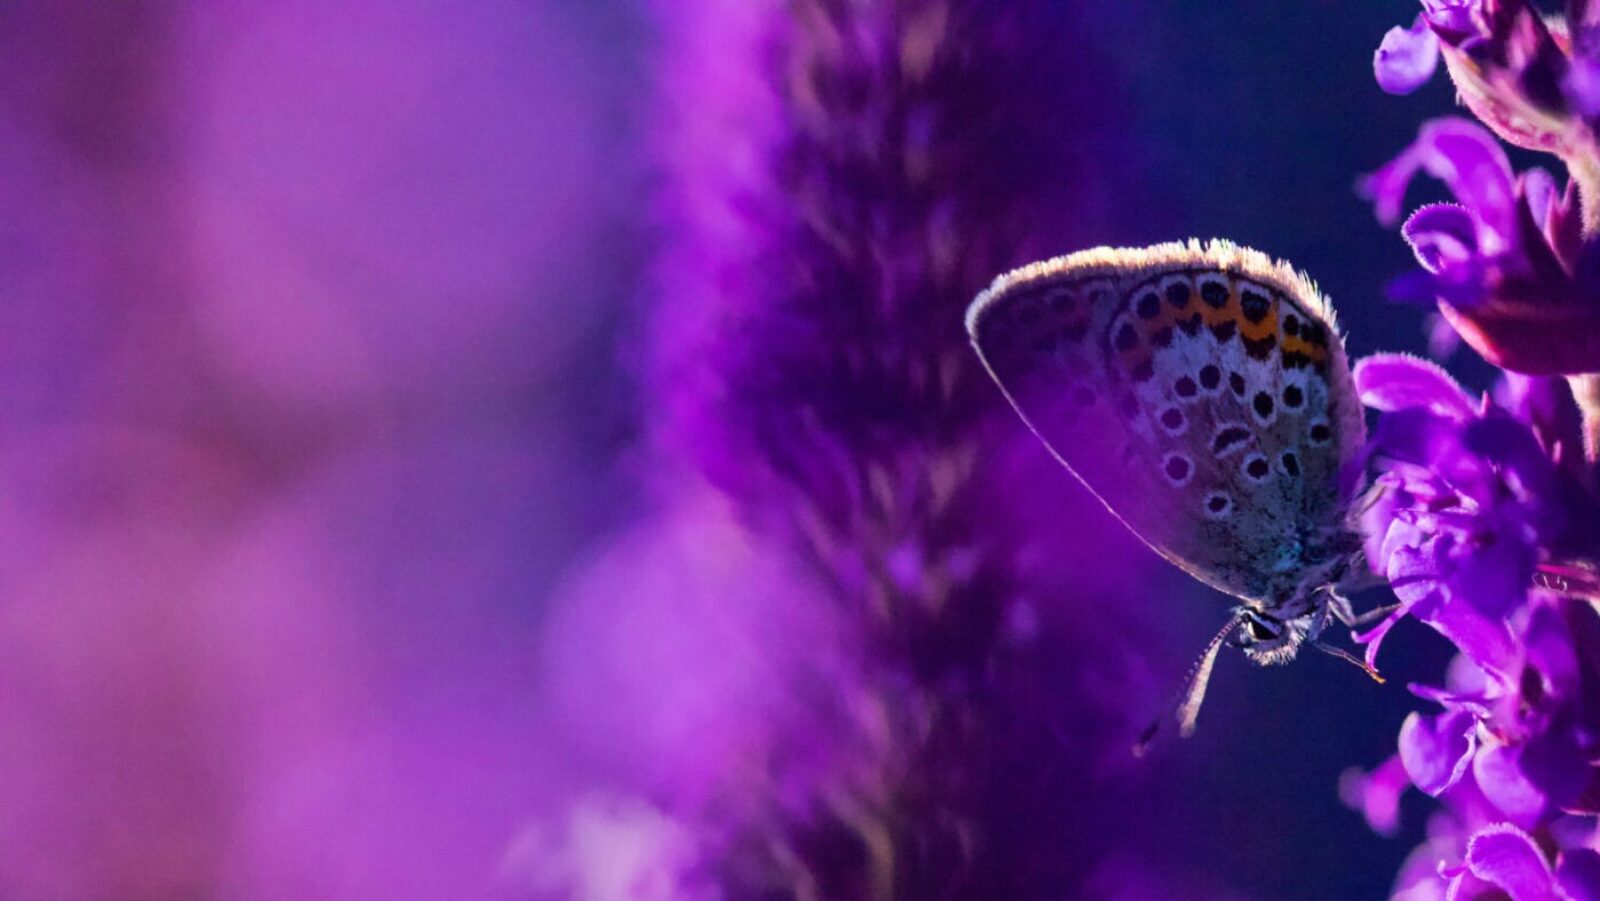 Photo of butterfly in purple flowers by Gustav Parenmark